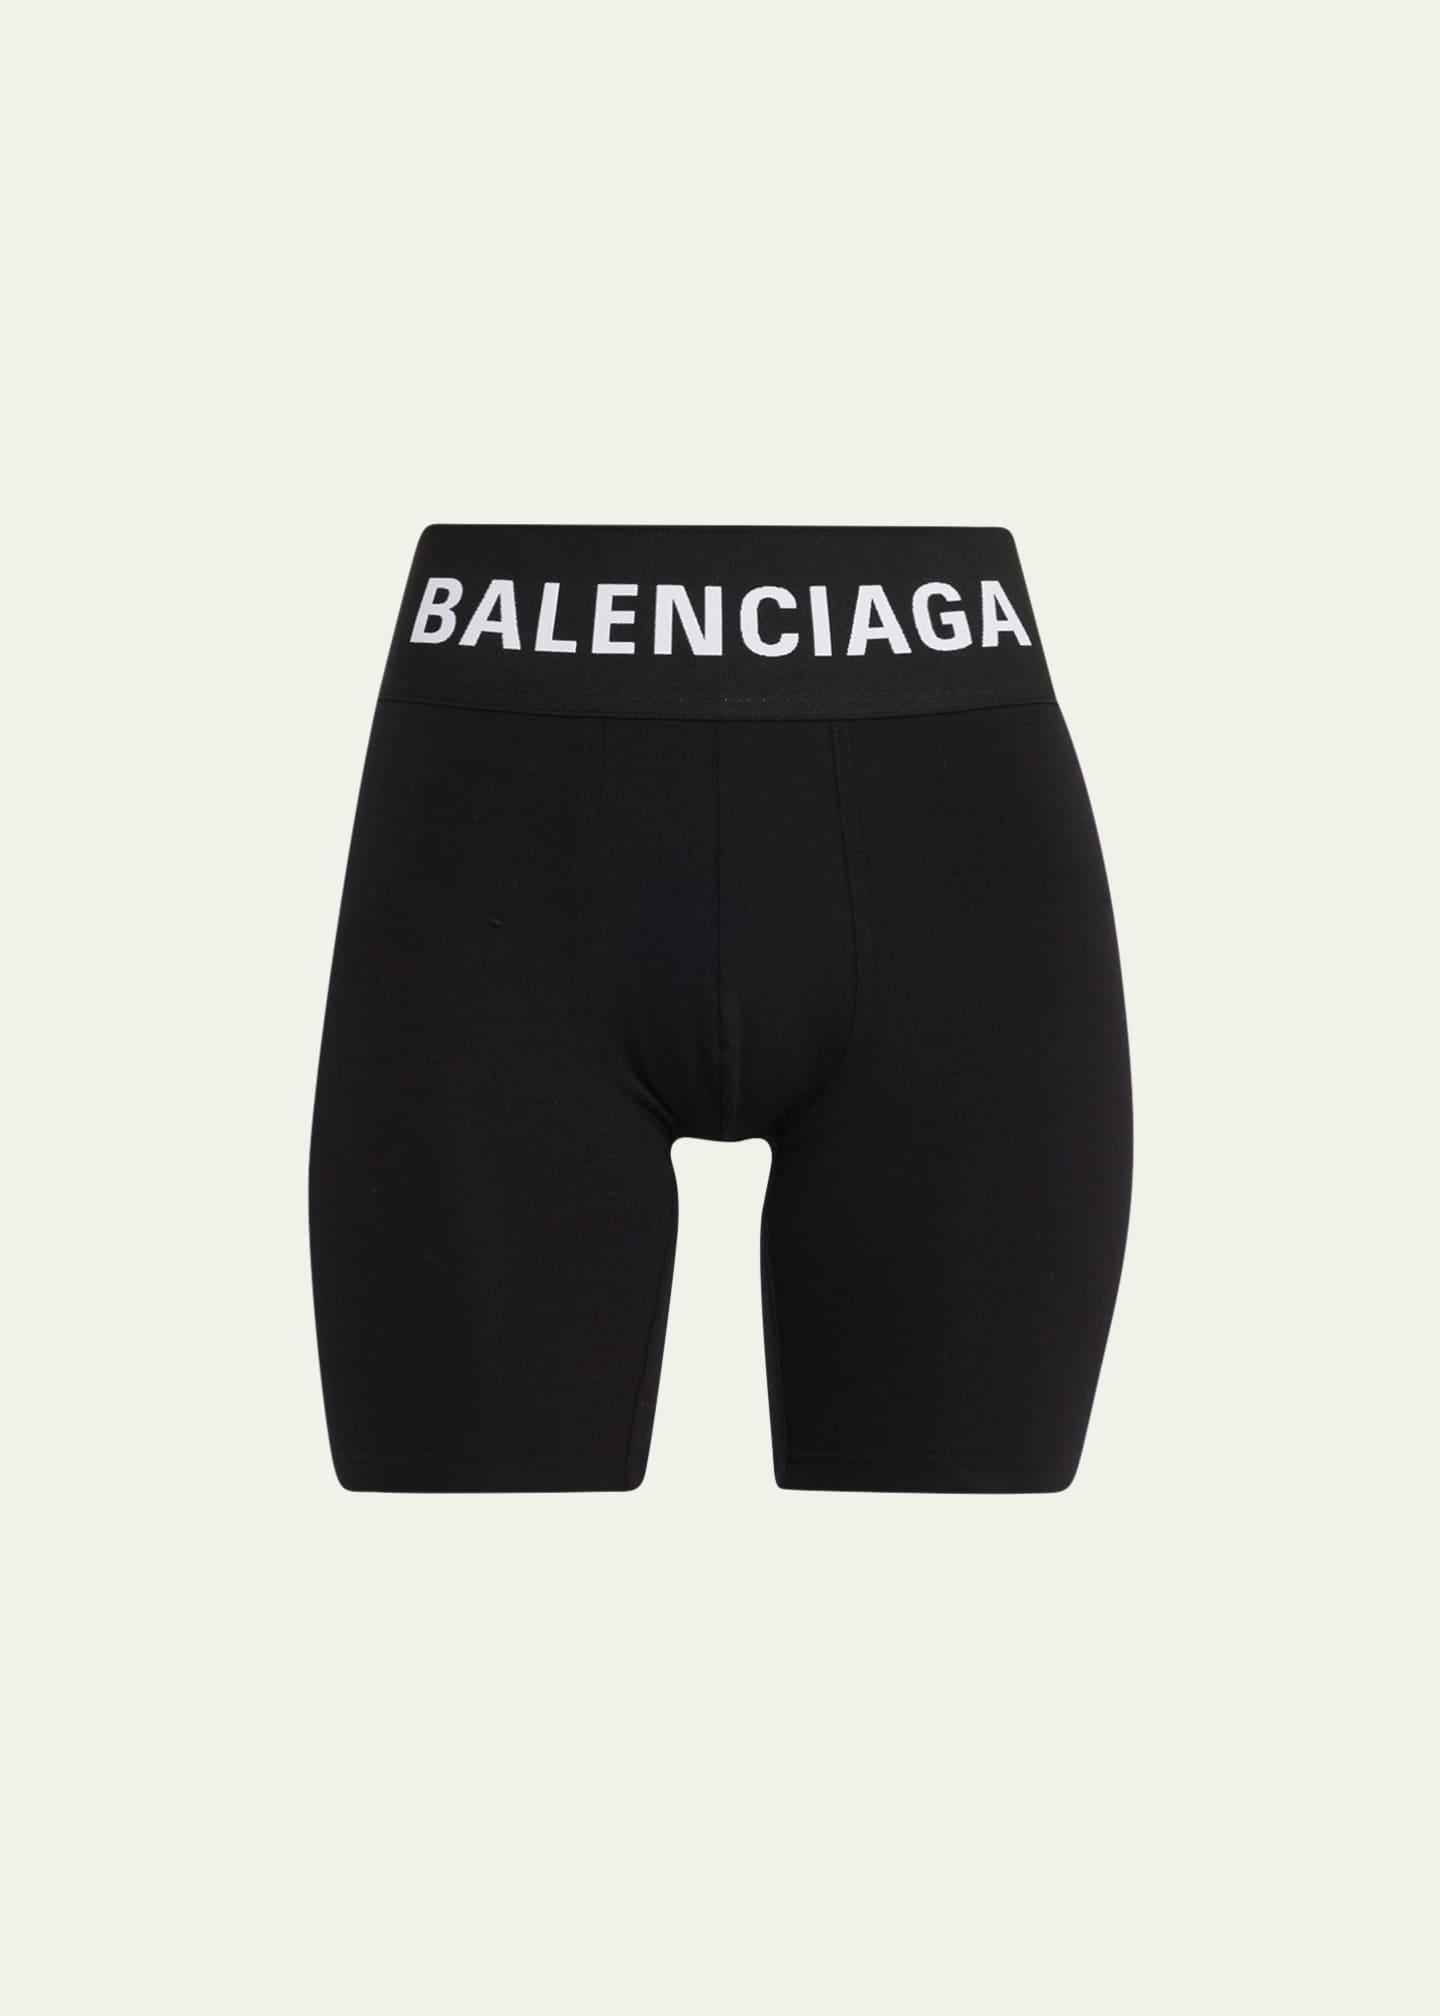 Balenciaga Athletic Man Underwear 'Black' - 7196644C9B41000